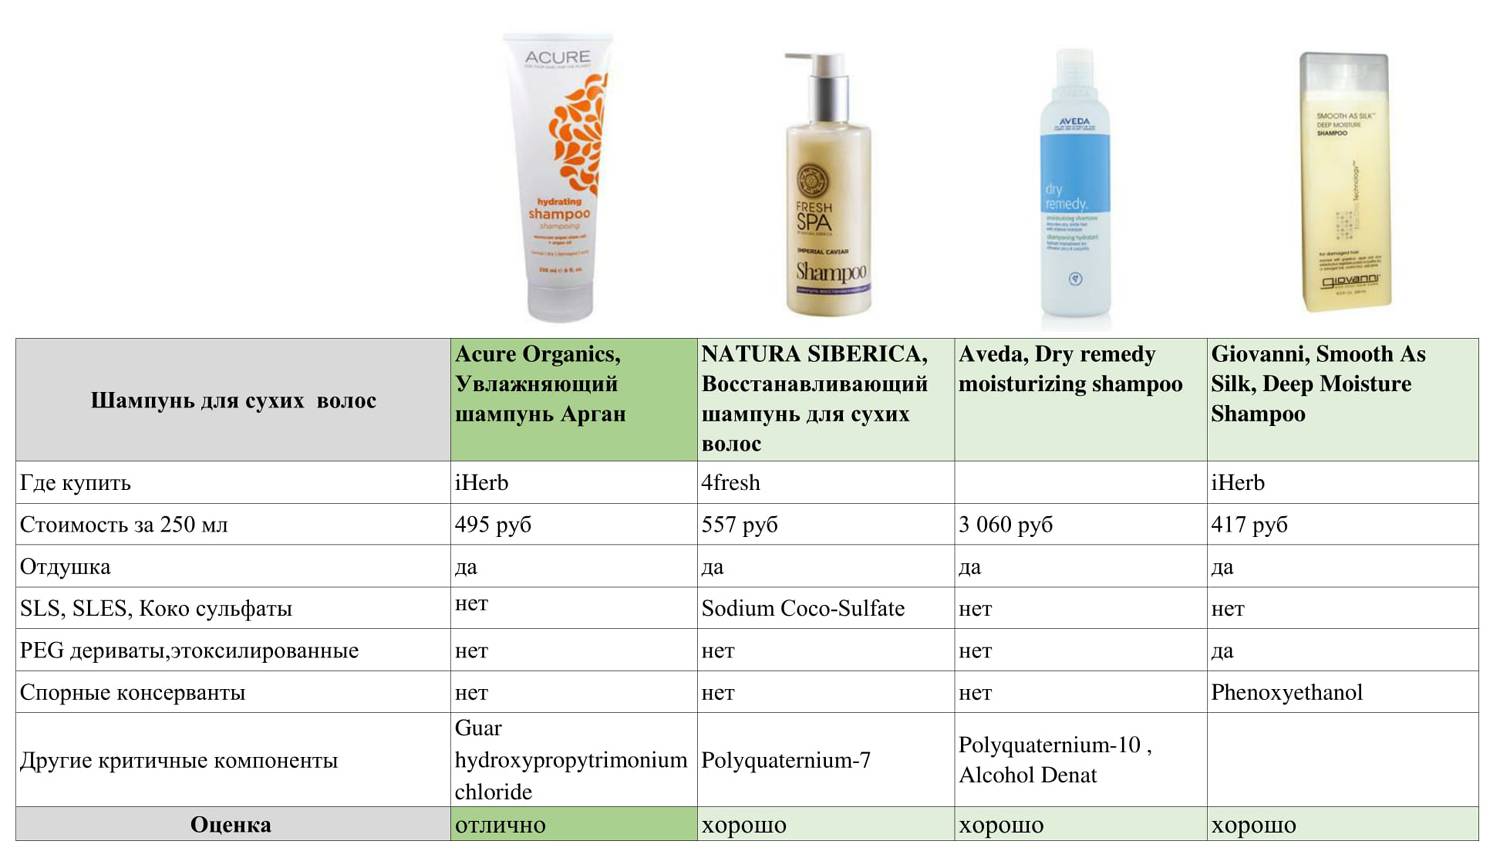 Таблица компонентов в косметике для волос